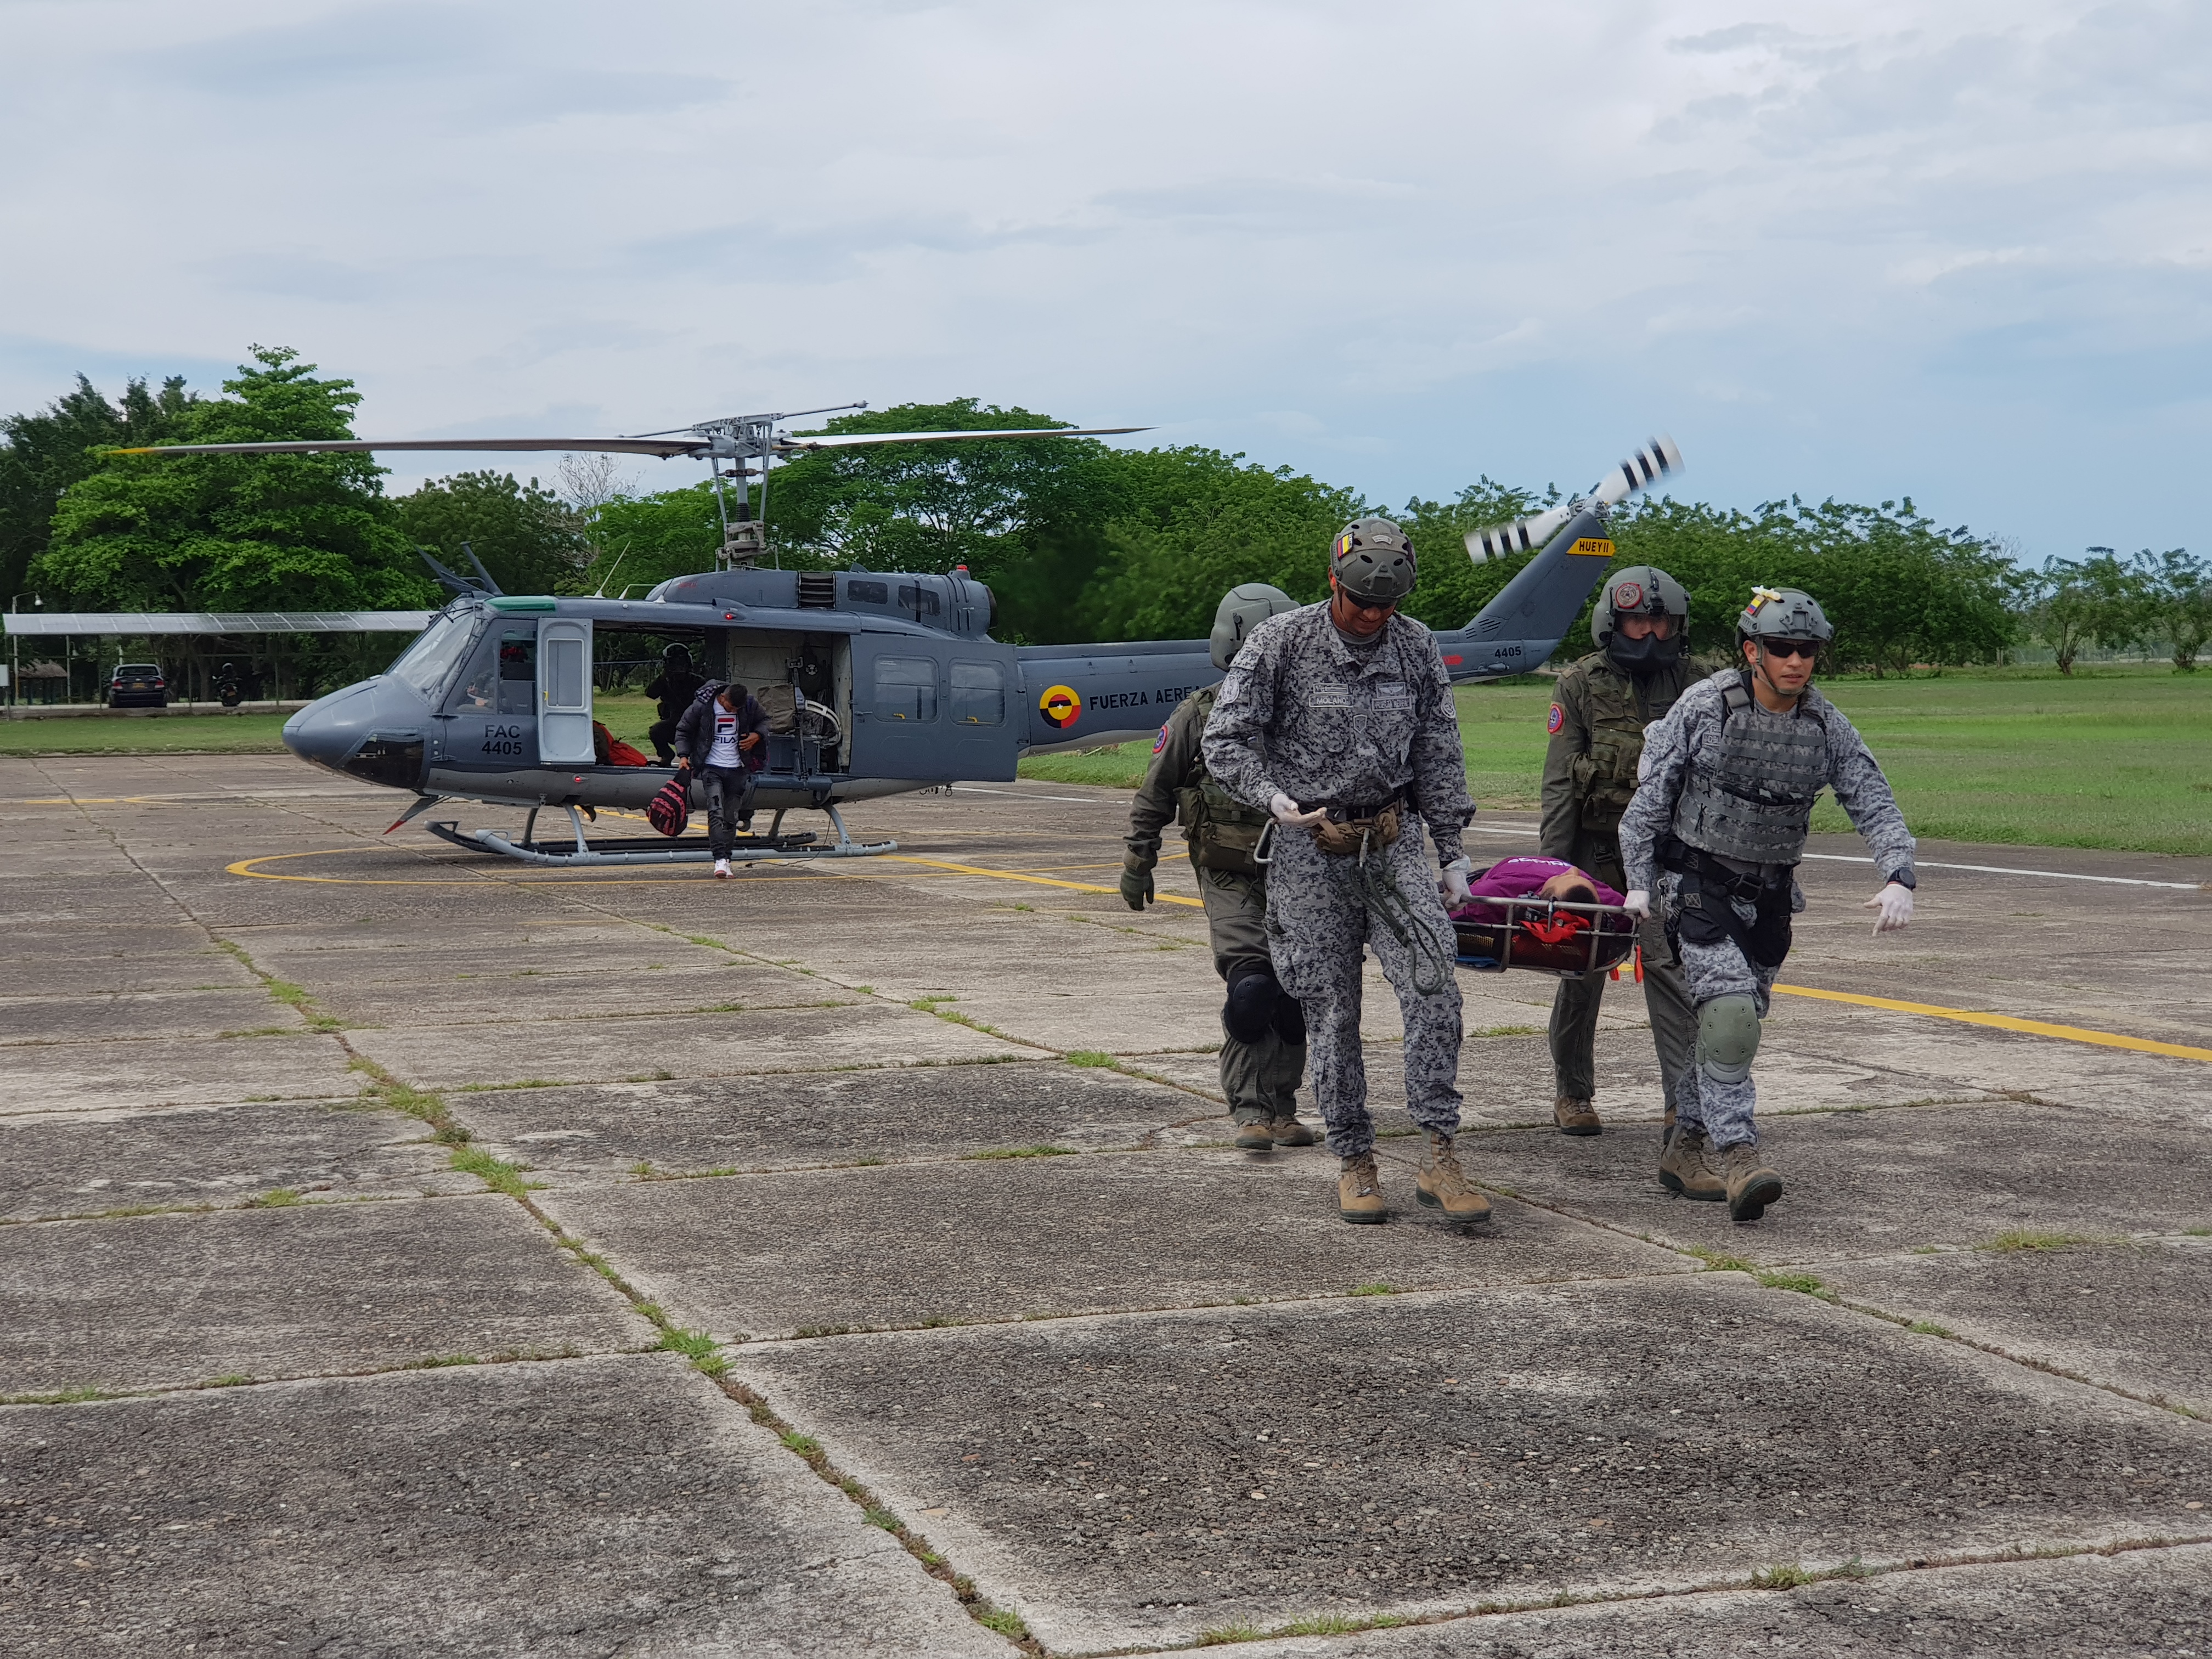 Oportuno traslado aeromédico realiza la Fuerza Aérea Colombiana en el Magdalena Medio